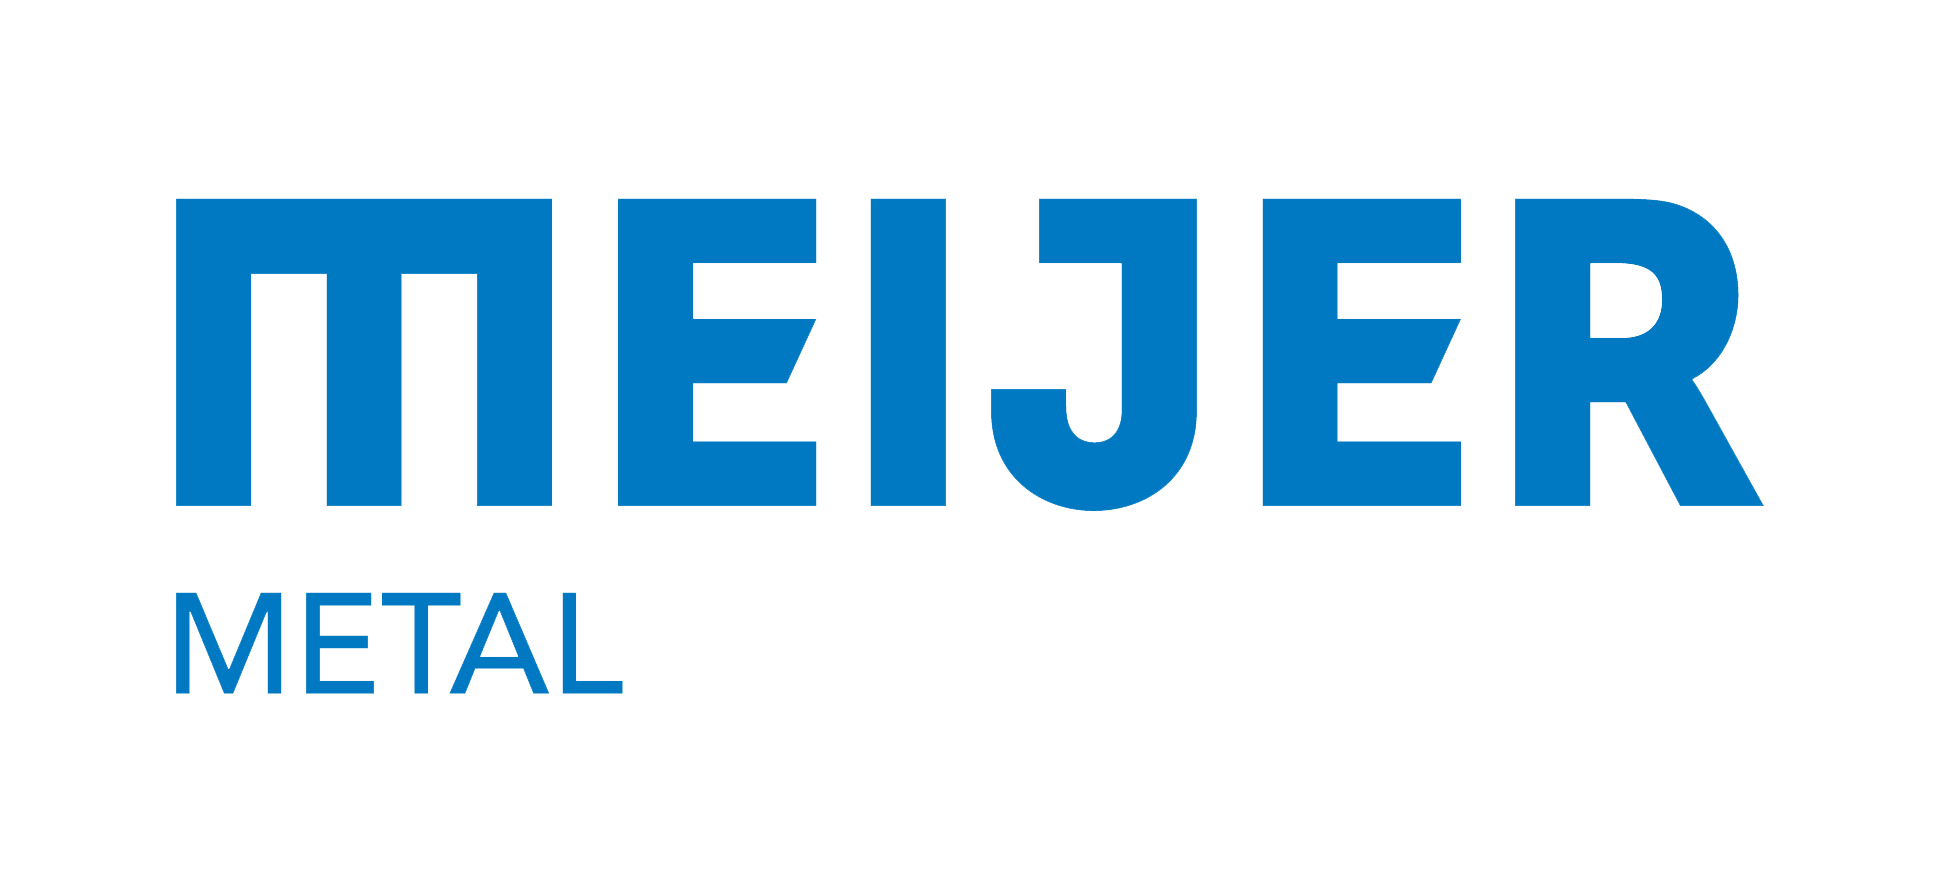 Meijer Brand Logo - meijer-metal-logo-2016 - meijer-group.com